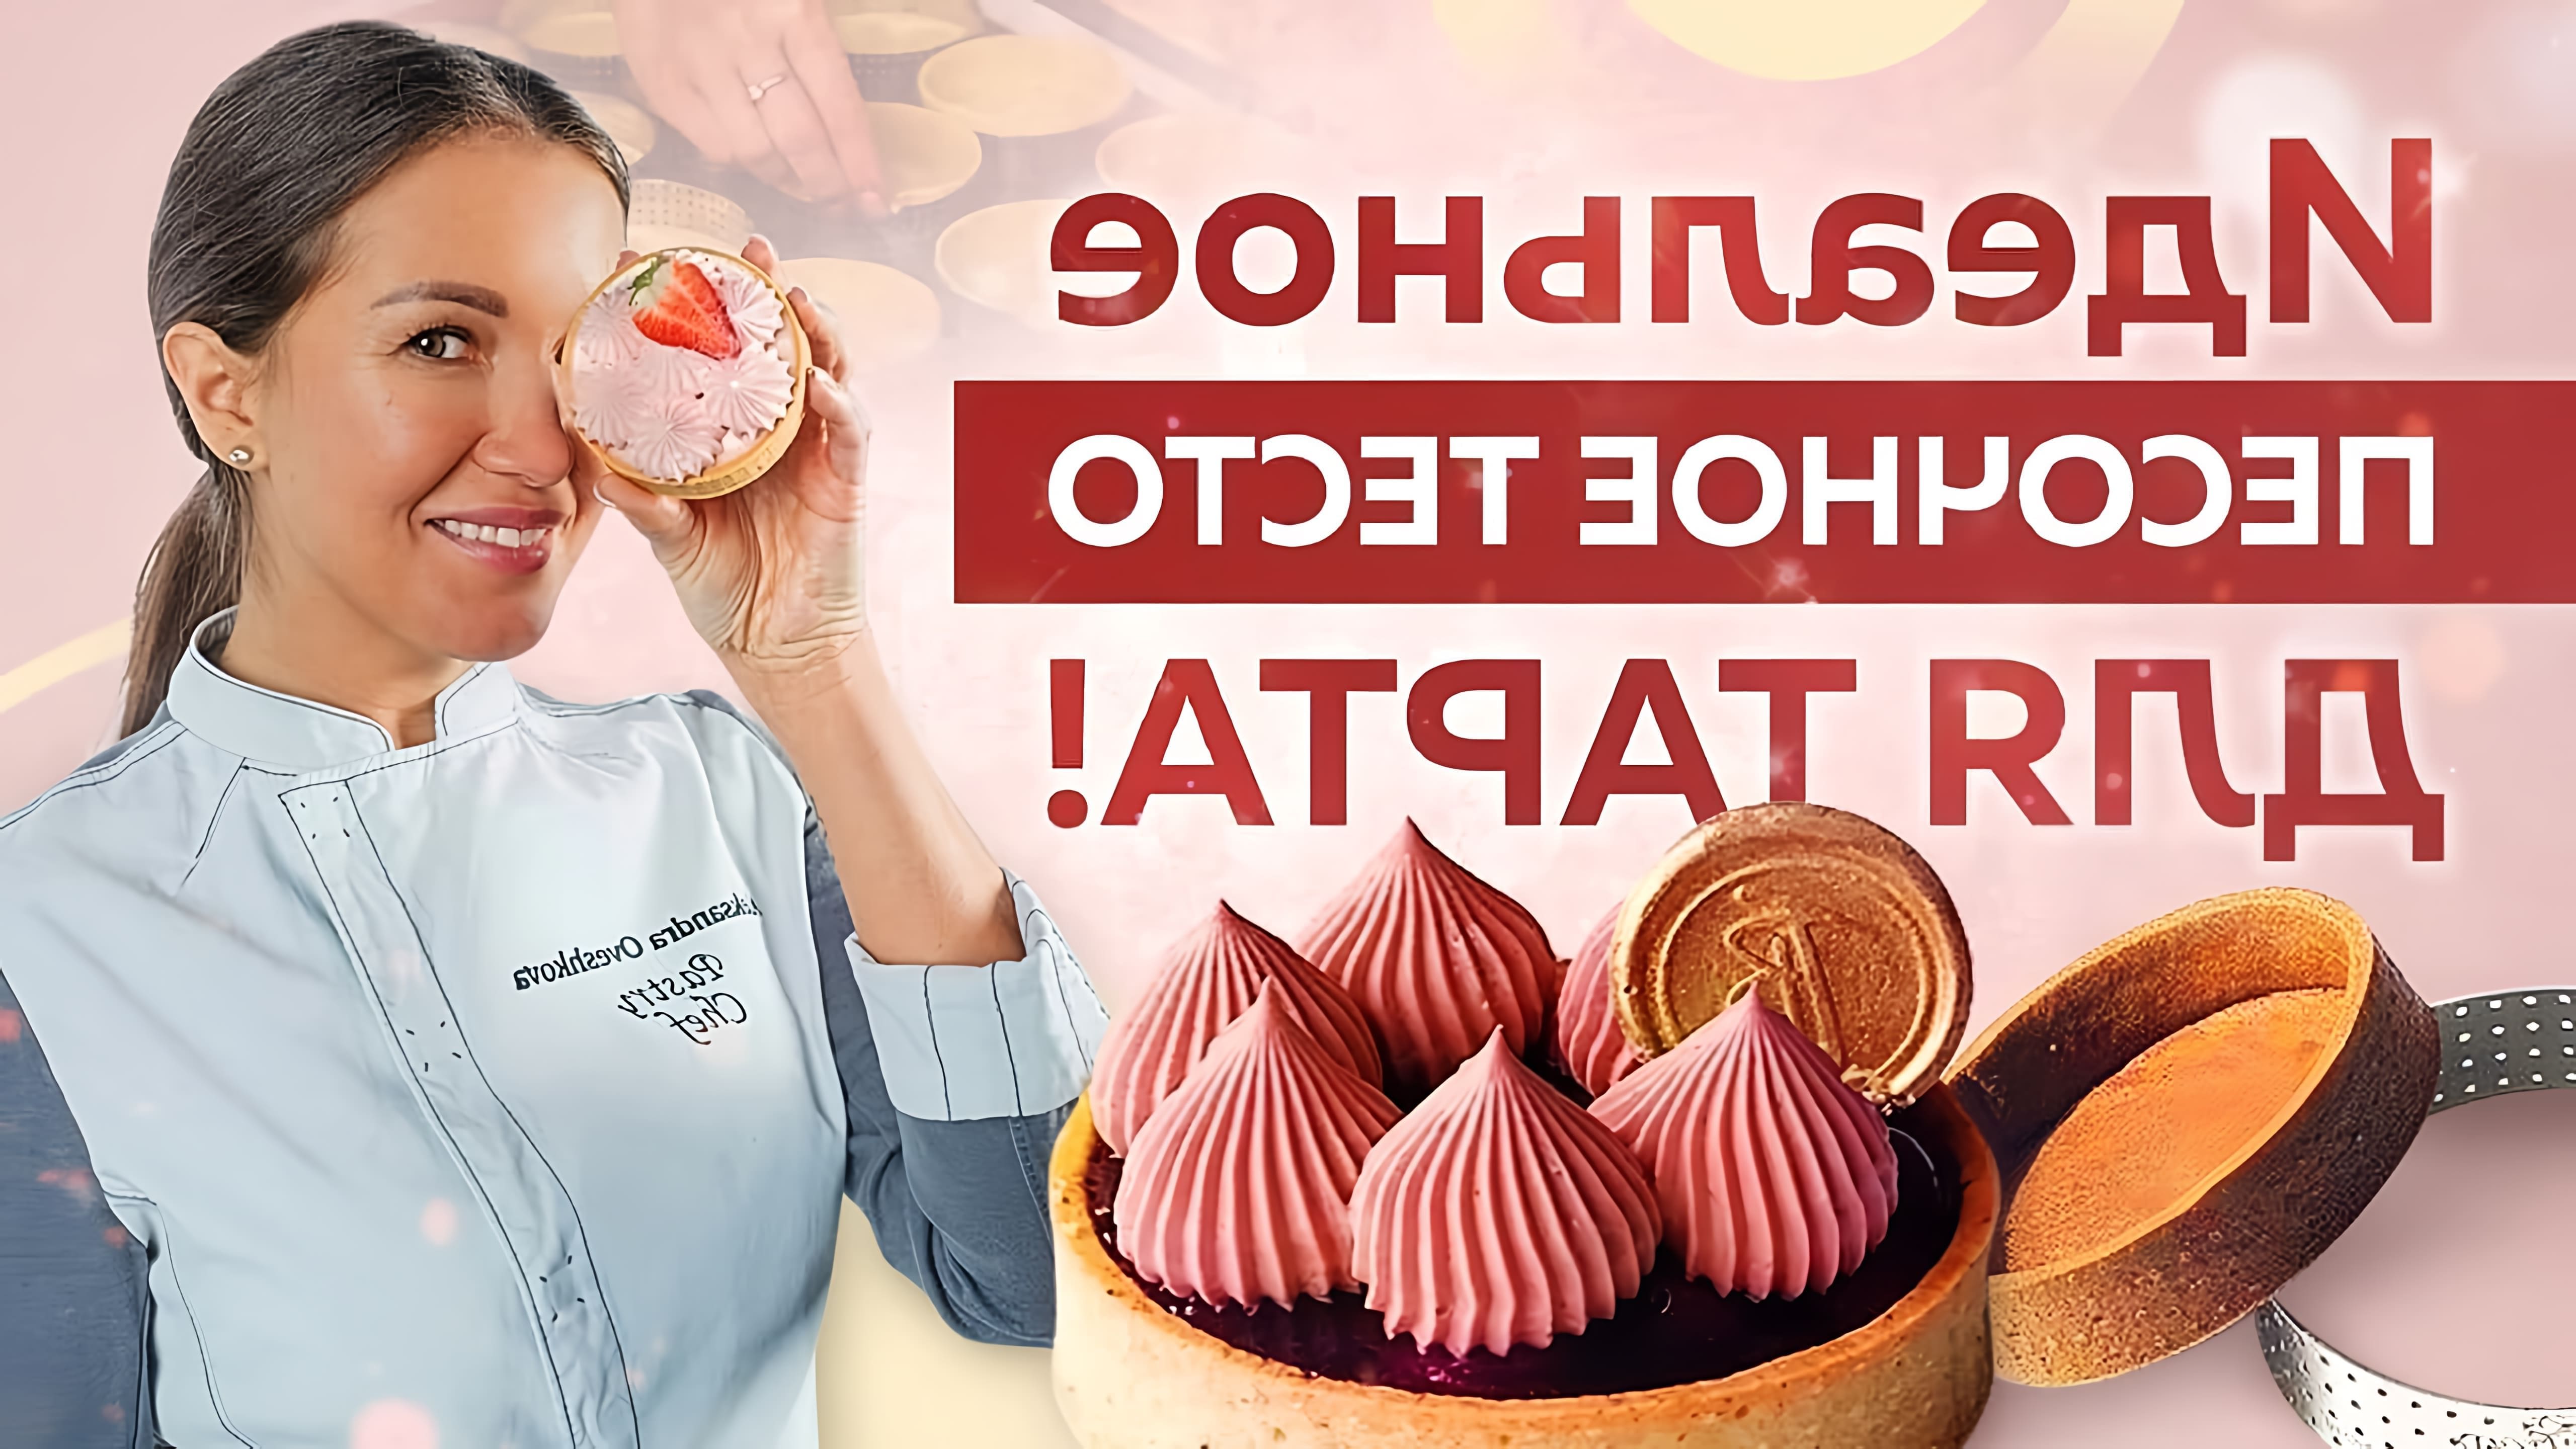 В этом видео шеф-кондитер Александра Орешкова рассказывает о приготовлении идеального песочного теста для тарта